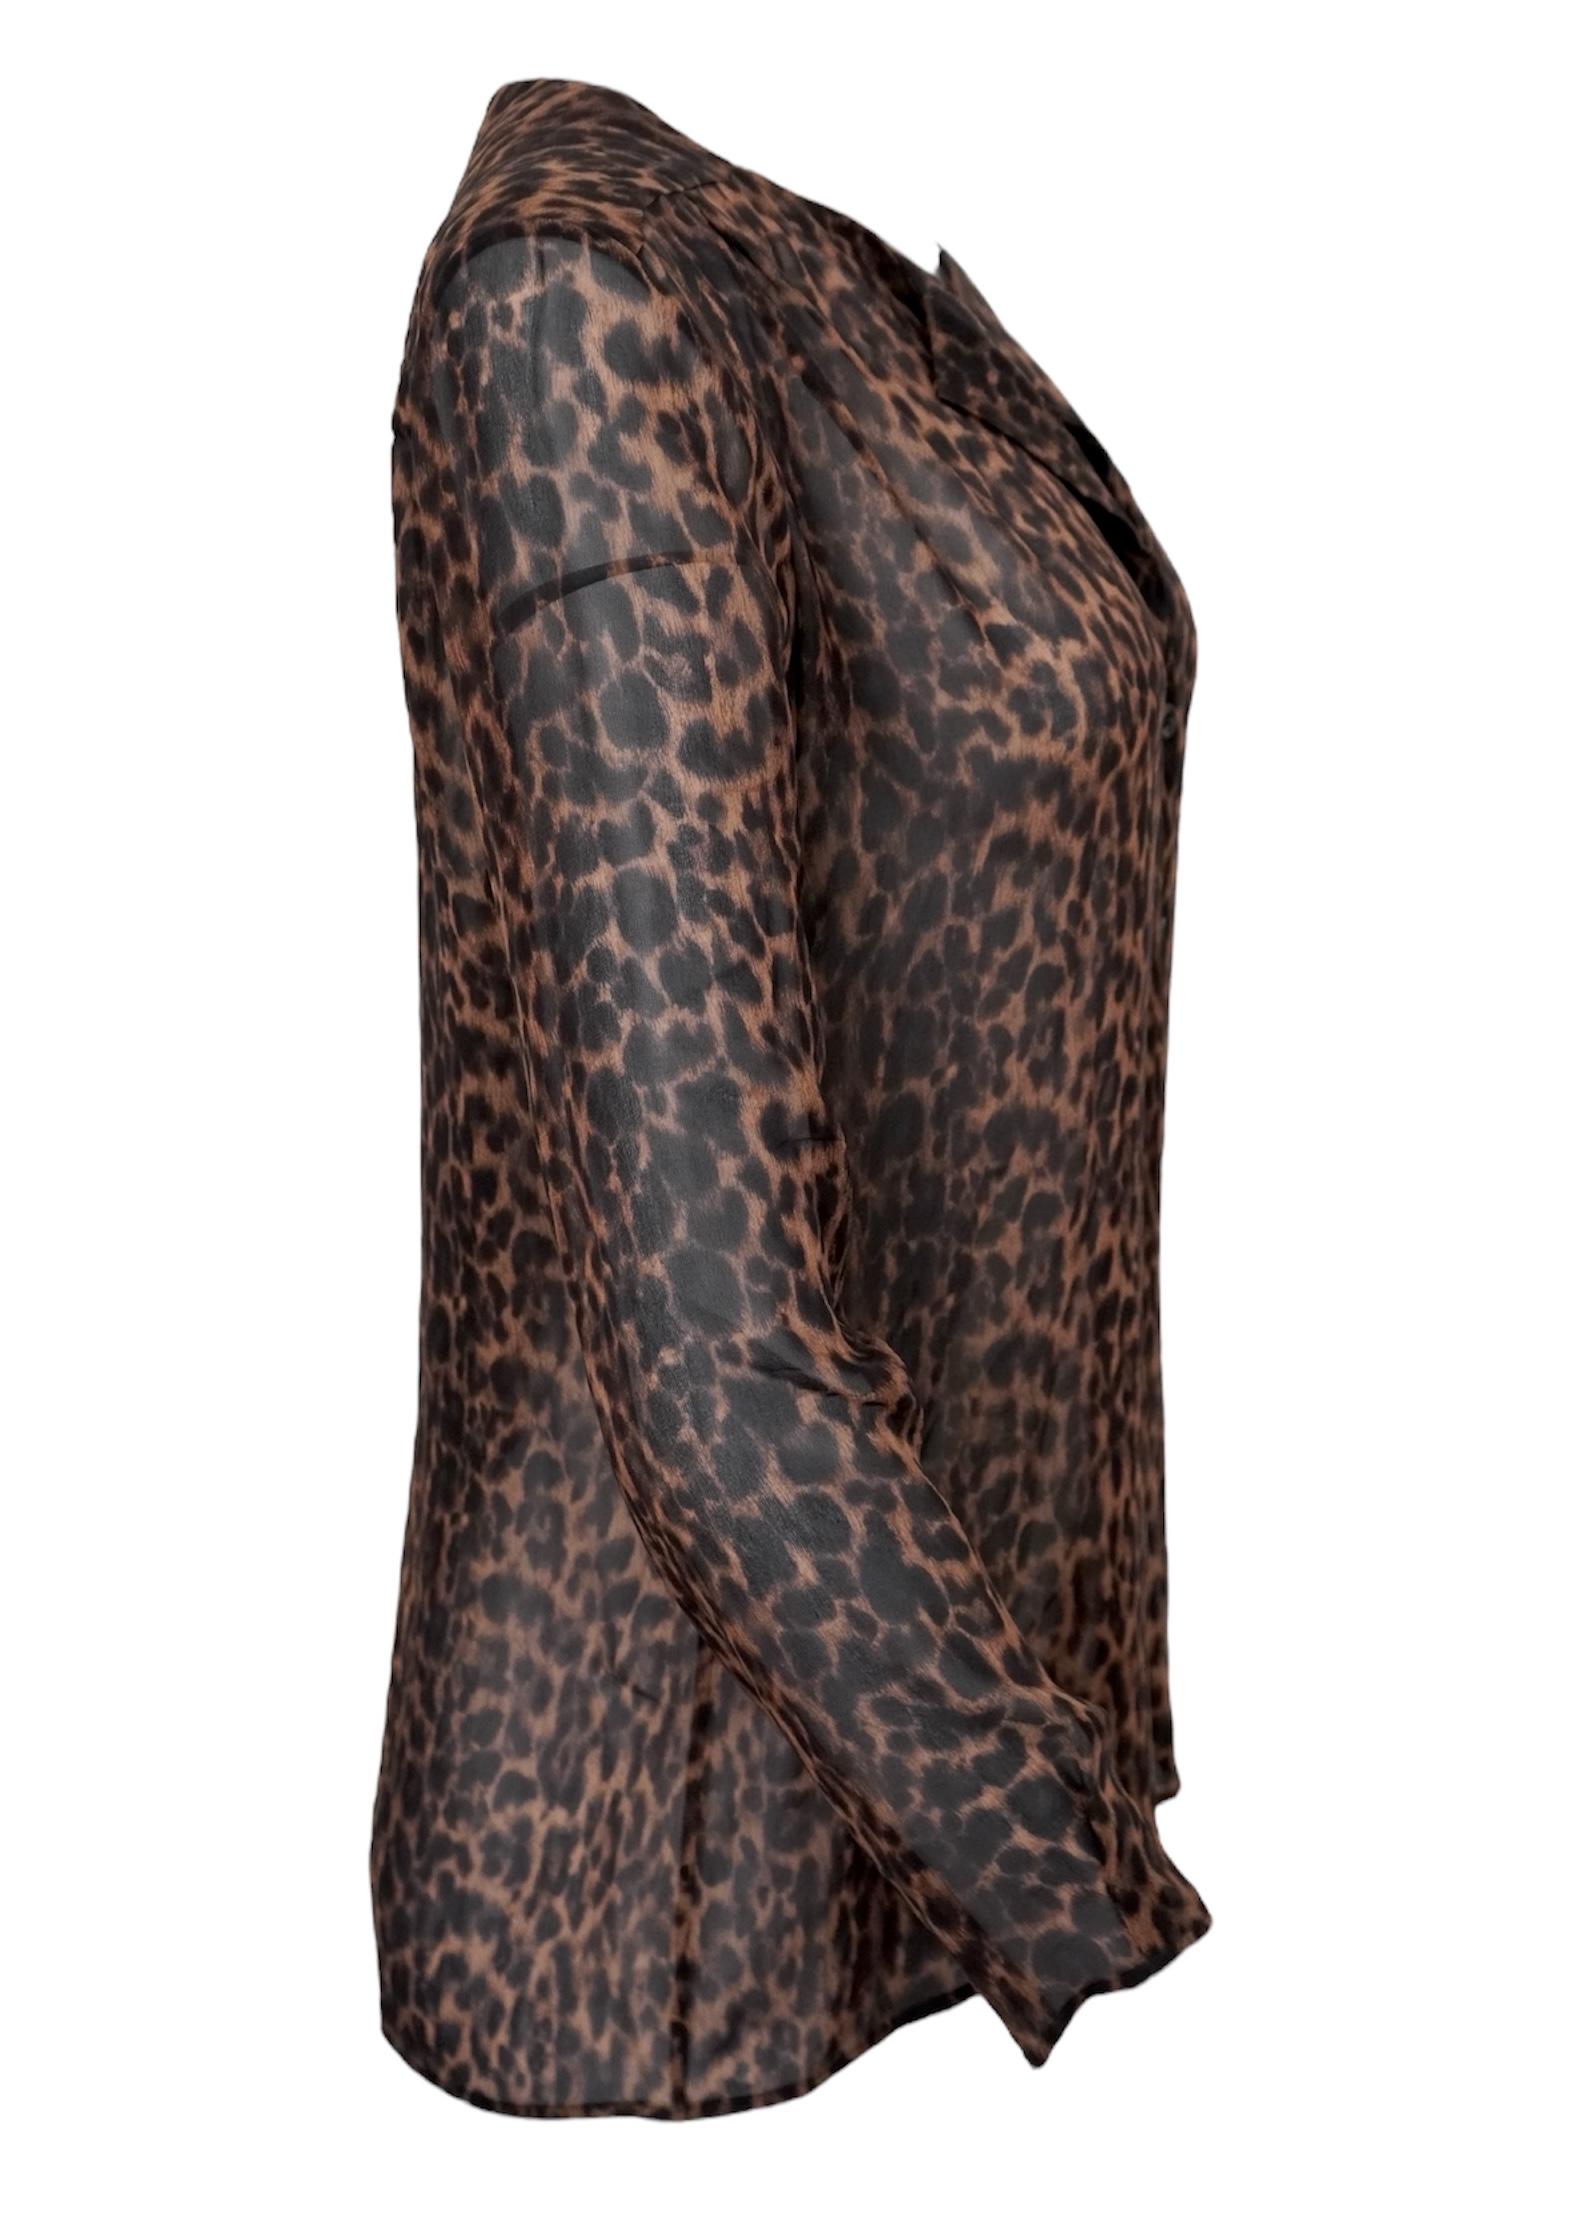 Yves Saint Laurent Seidenes Leoparden-Oberteil mit Knöpfen. Hergestellt in Italien. Durchsichtige Seide, lange Ärmel, 6-Knopf-Verschluss. Größe nicht angegeben. Länge 27 Zoll, Büste 41 Zoll, Taille 39 Zoll. 

Yves Saint Laurent SAS, auch bekannt als